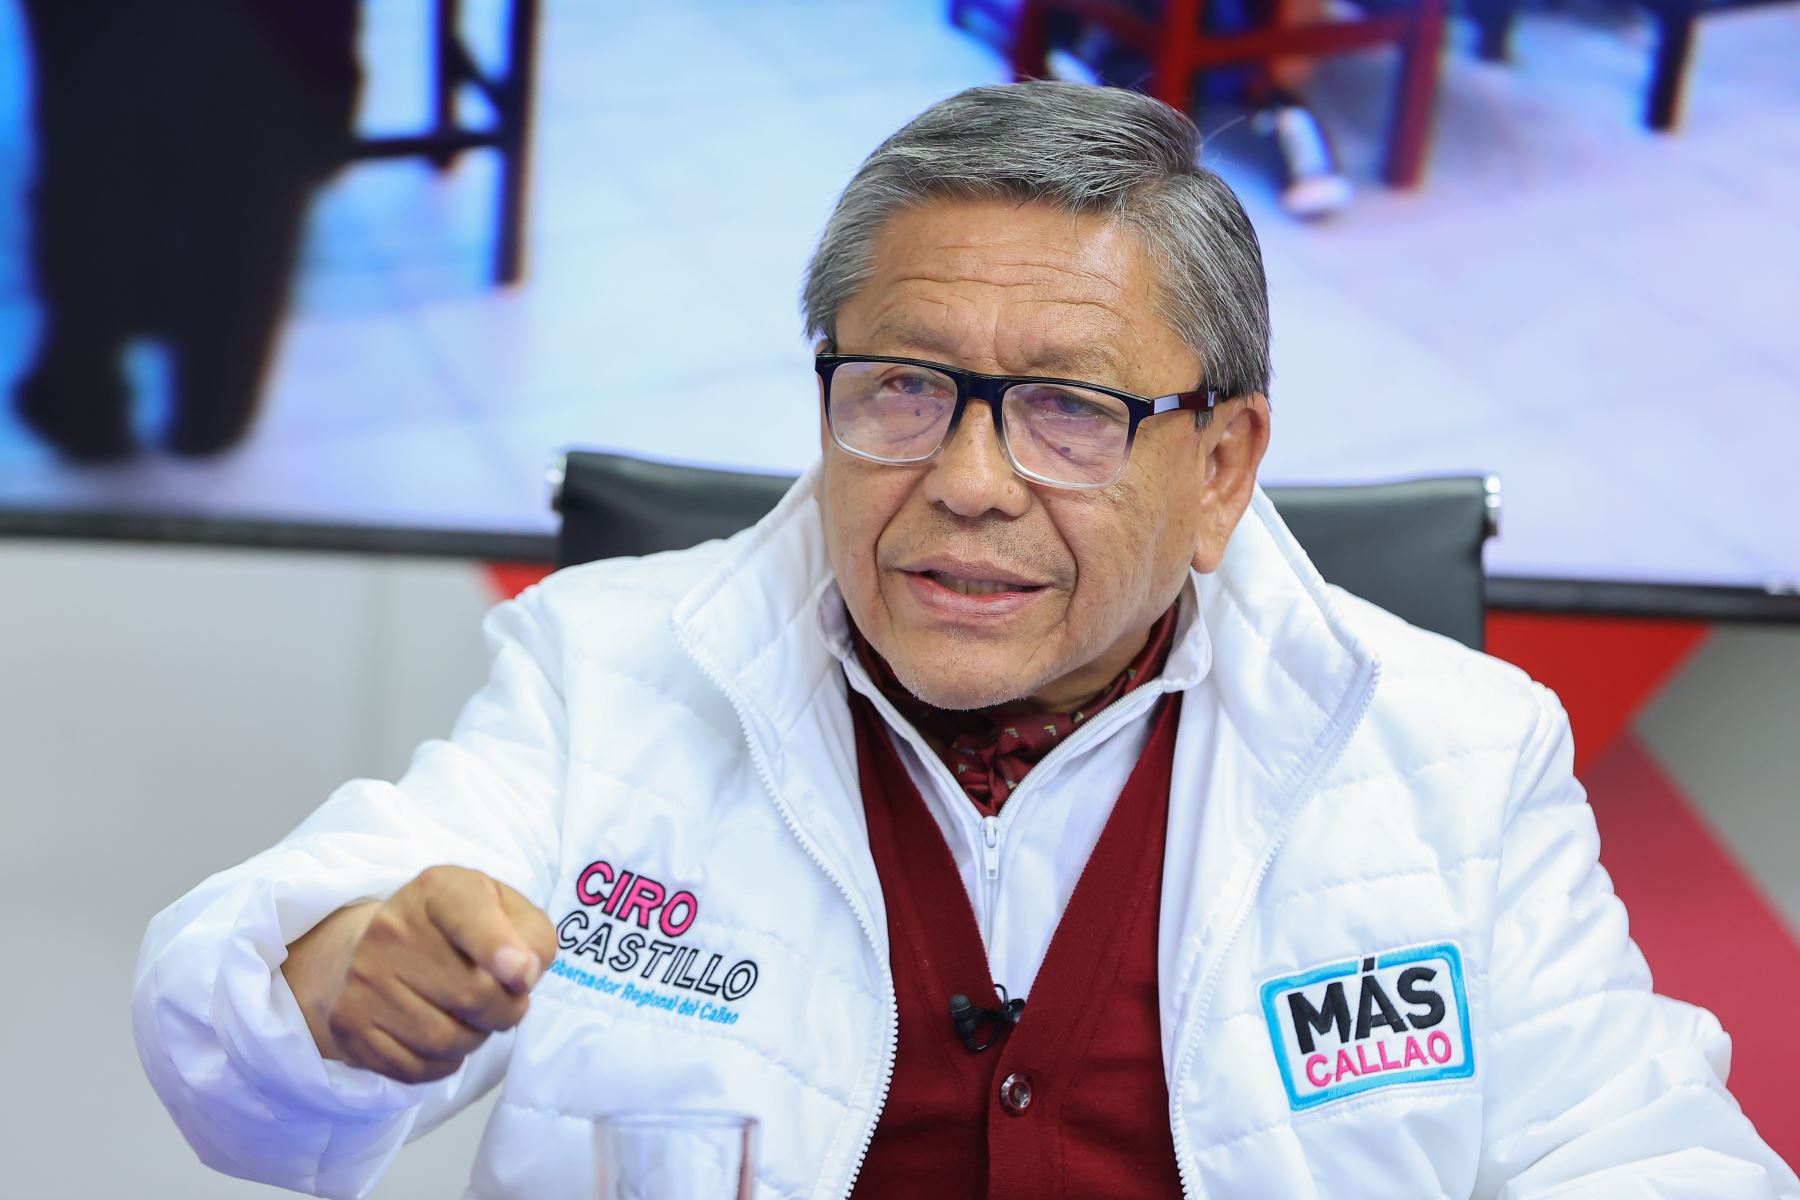 Ciro Castillo es el virtual gobernador regional del Callao